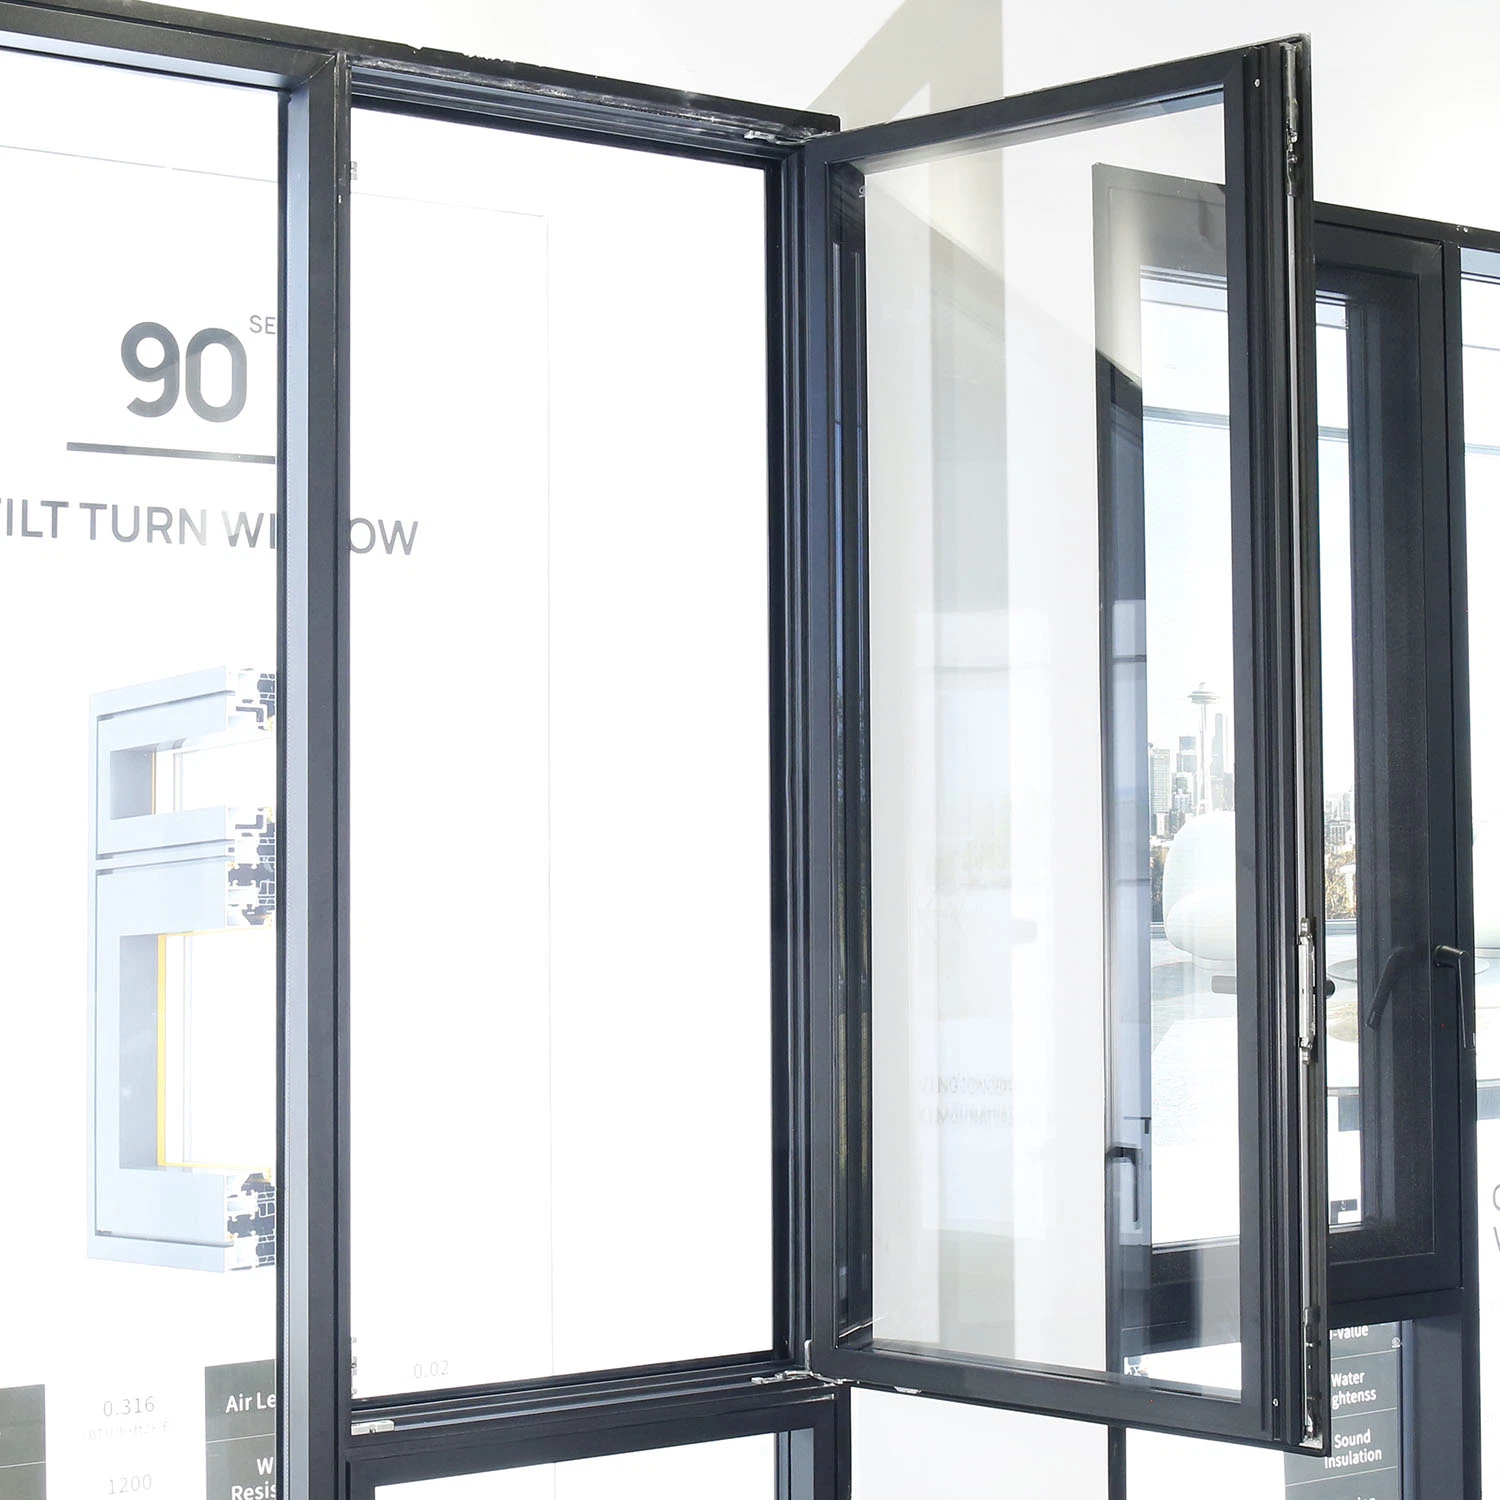 Sixinalu Entrance Metal Door Modern Building Material Glass Swing Open Casement Window